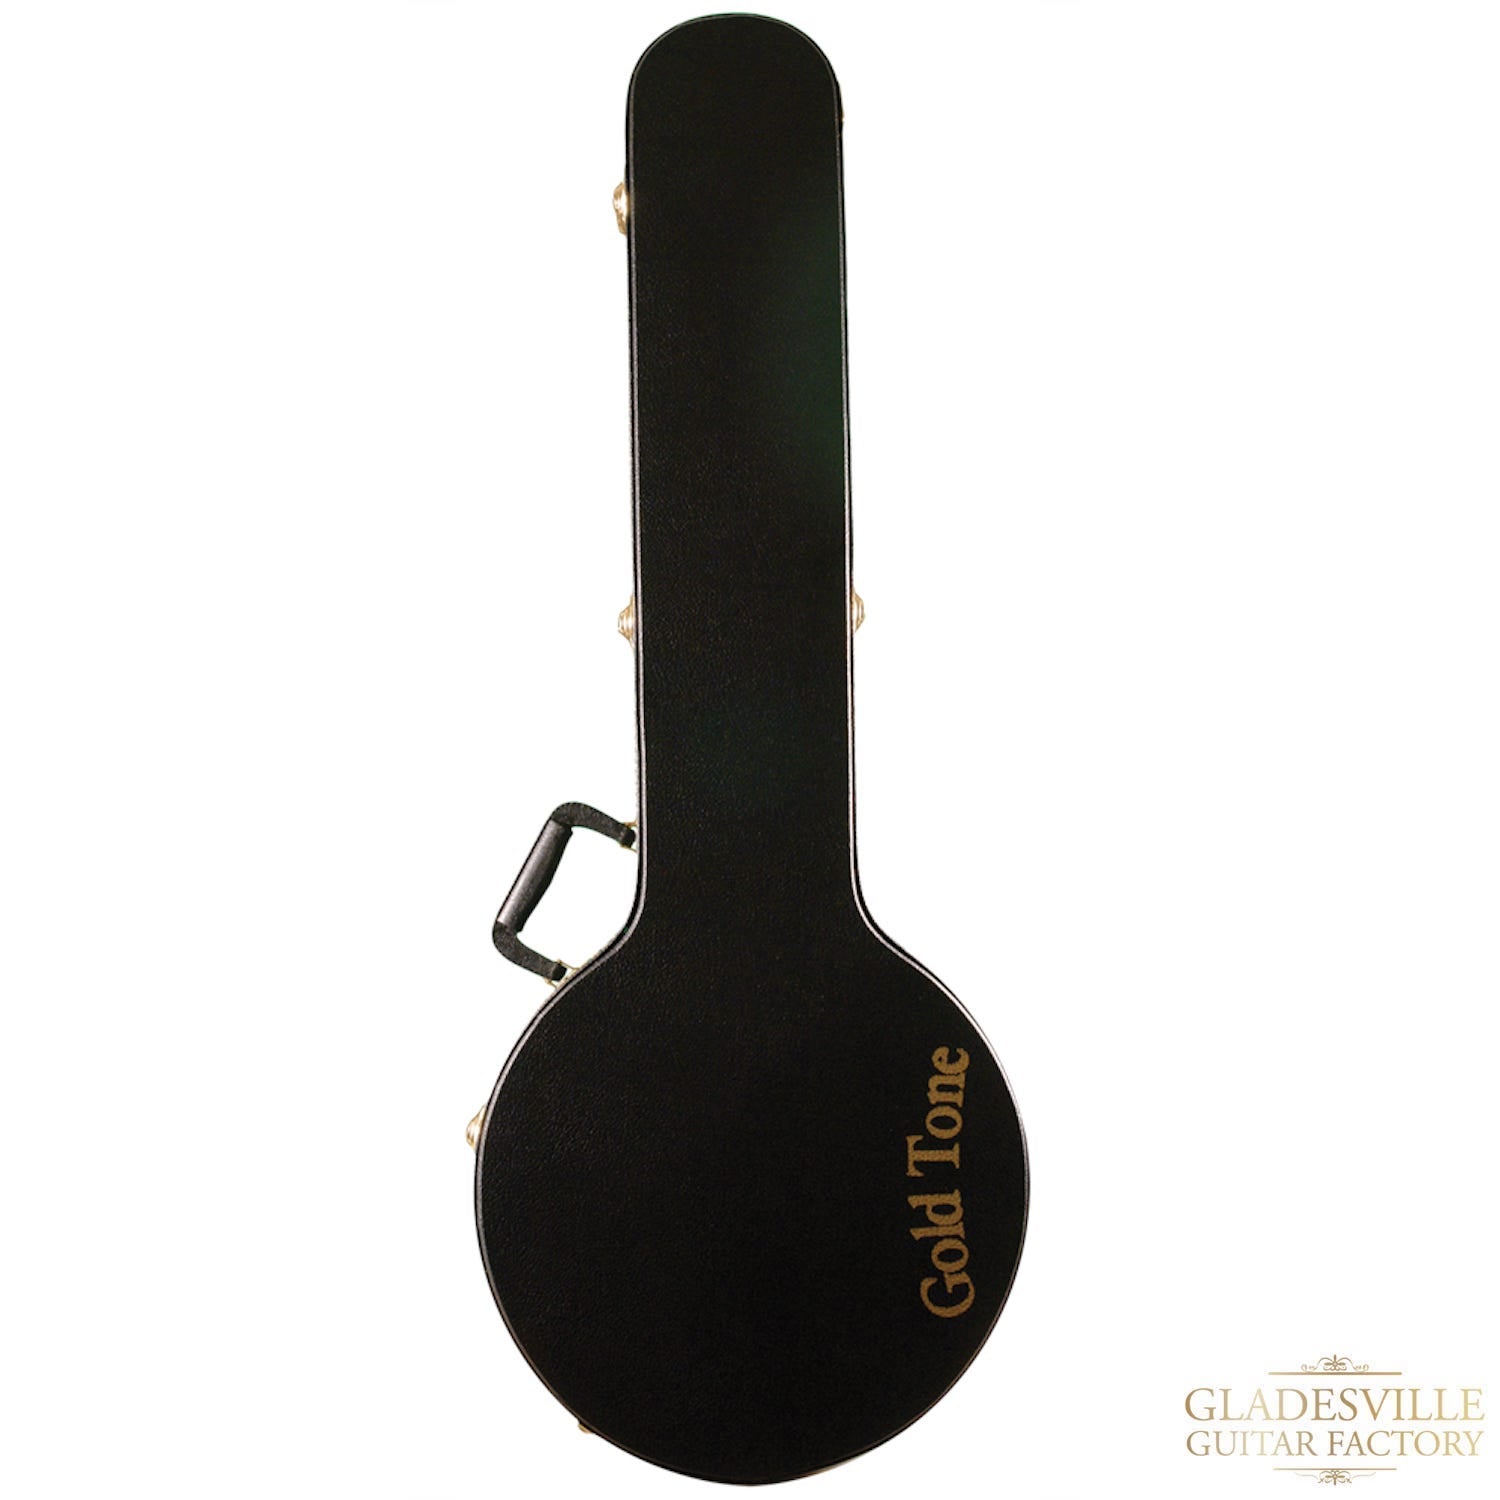 Gold Tone OB-3 5 String Banjo with case